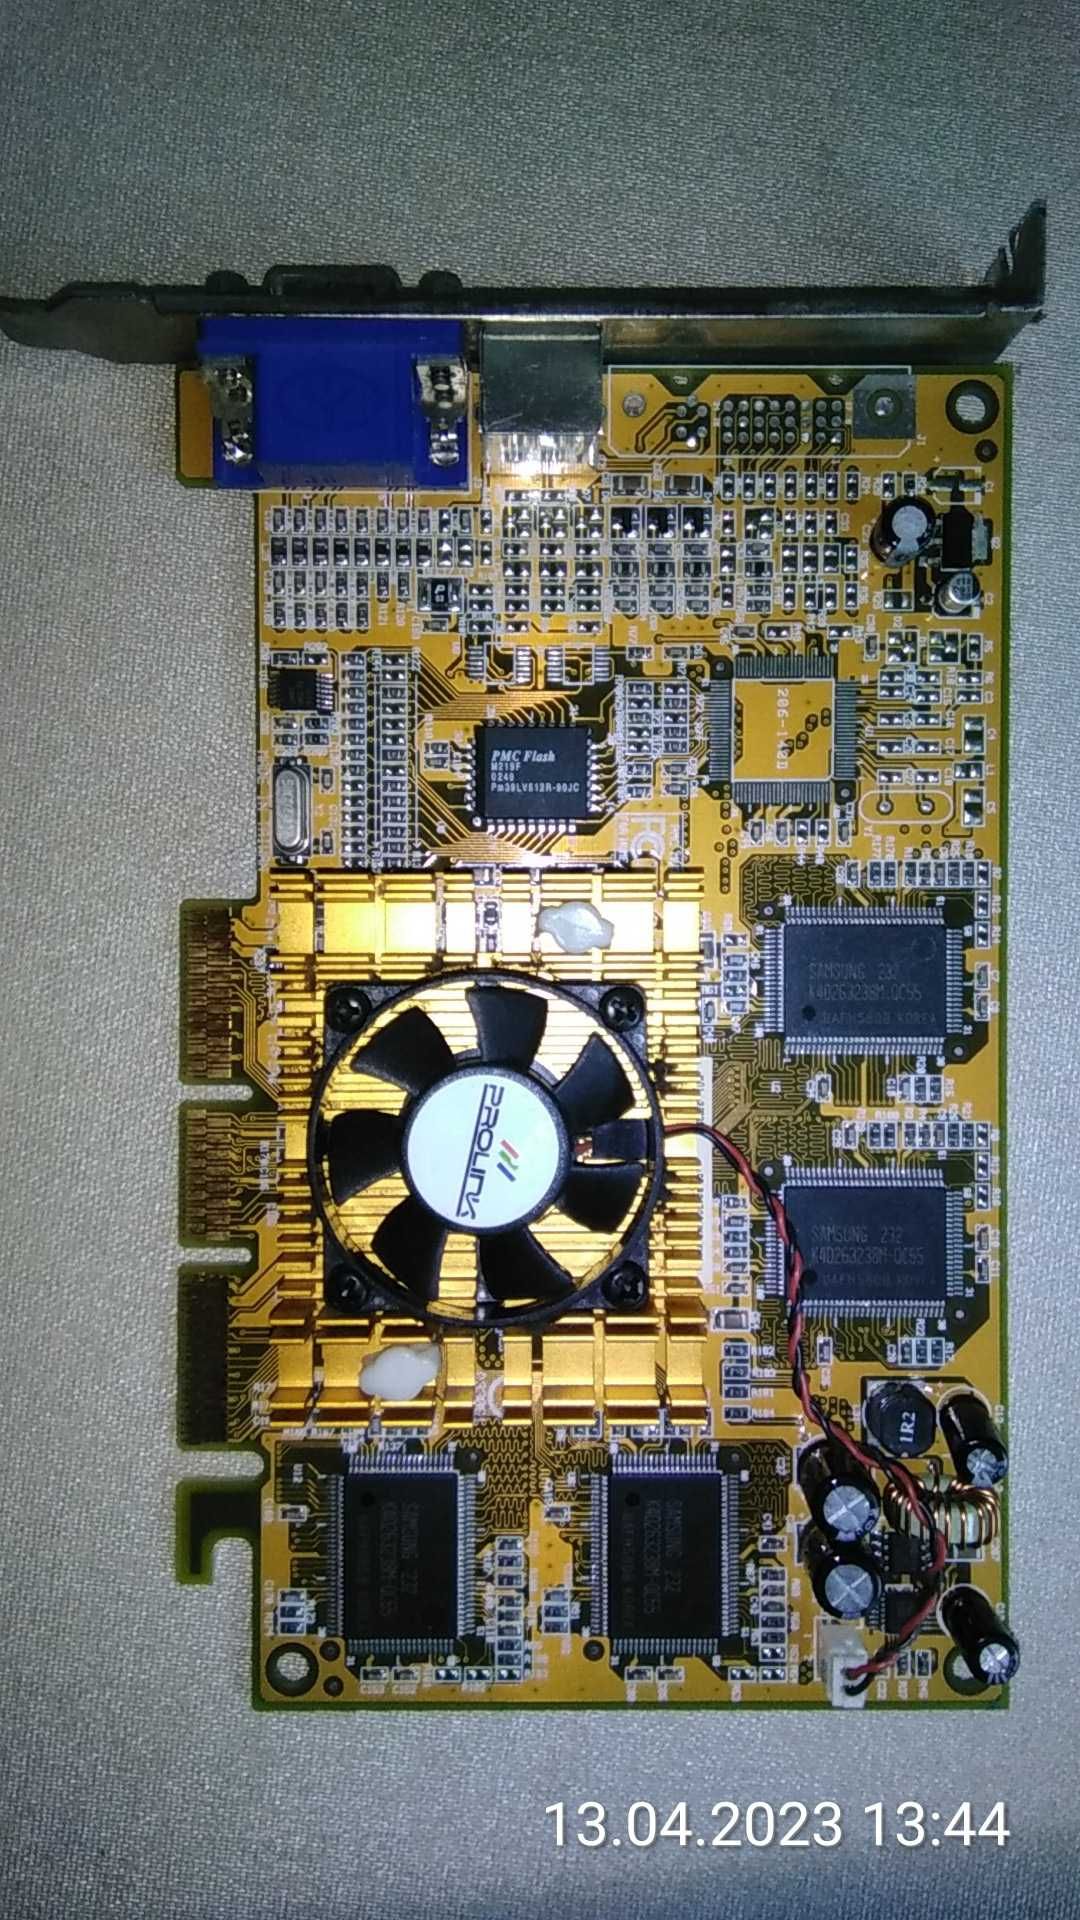 Prolink NVIDIA Geforce4 MX440 SE 64MB MVGA-NVG17GA(L) AGP